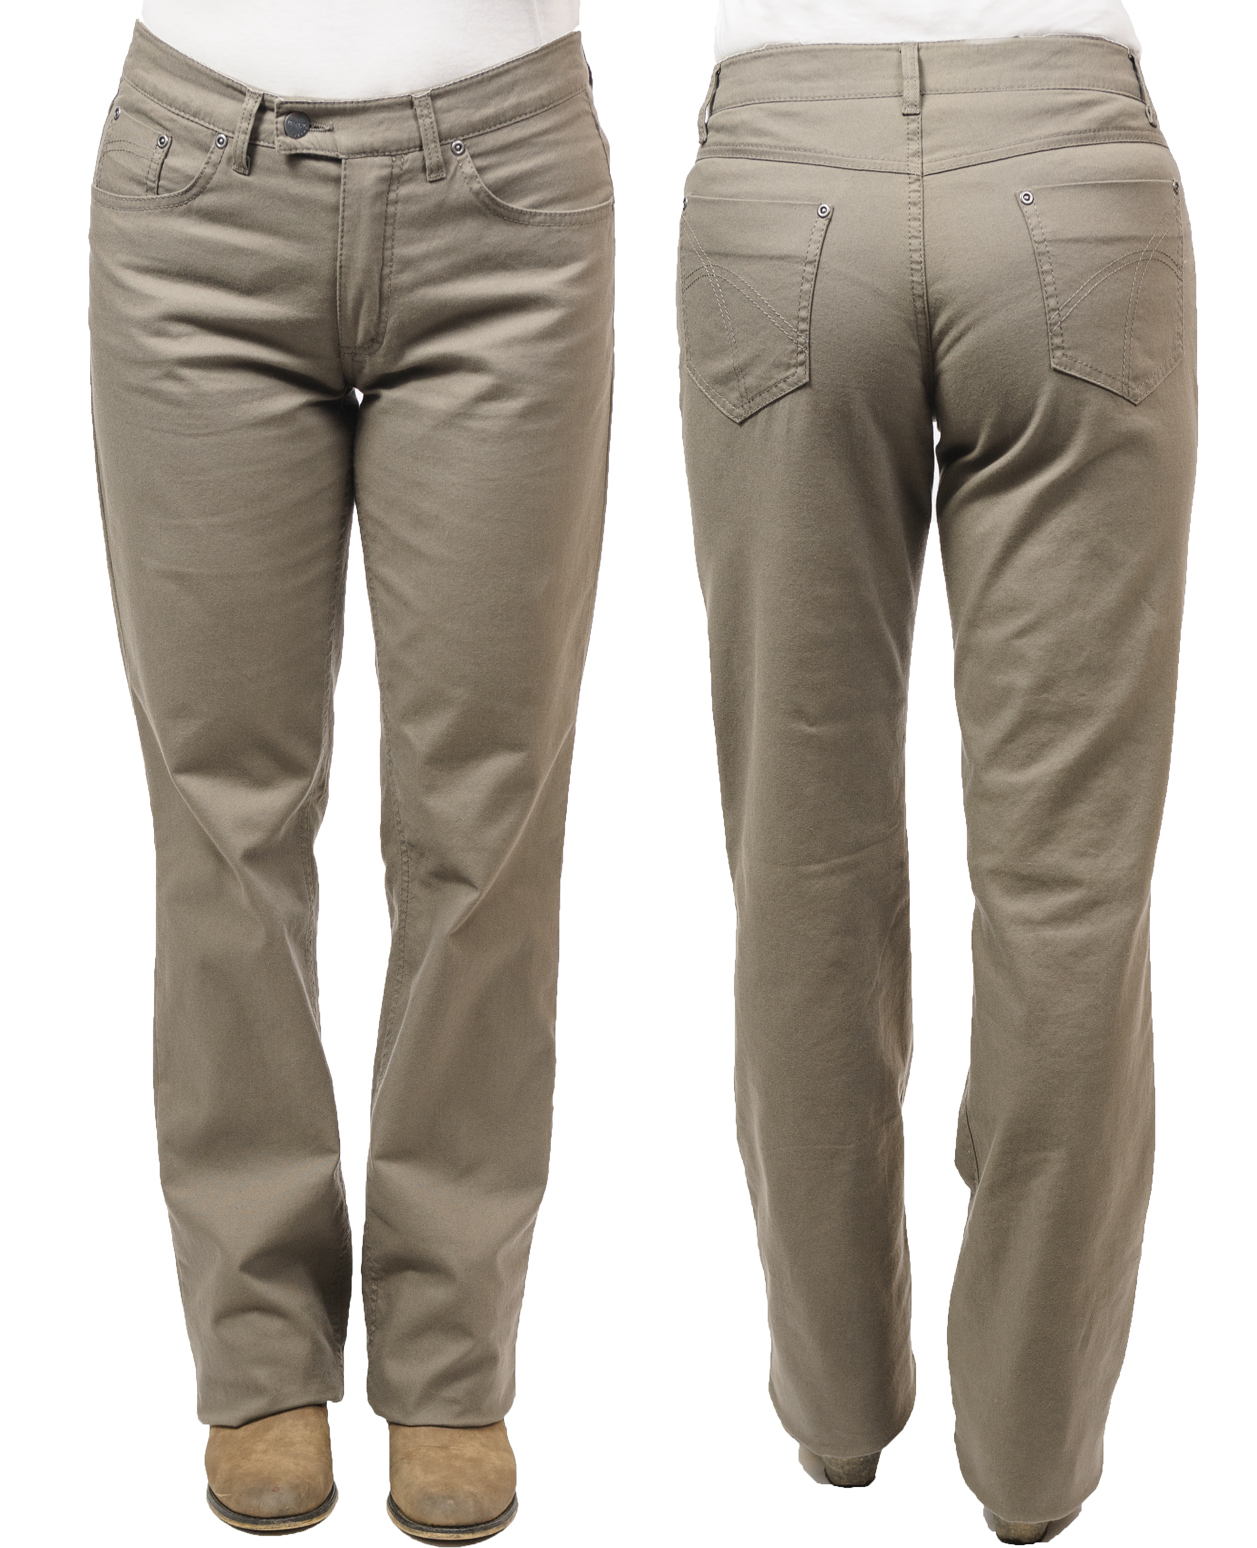 Kalhoty dámské letní Panada, elastické - riflový střih